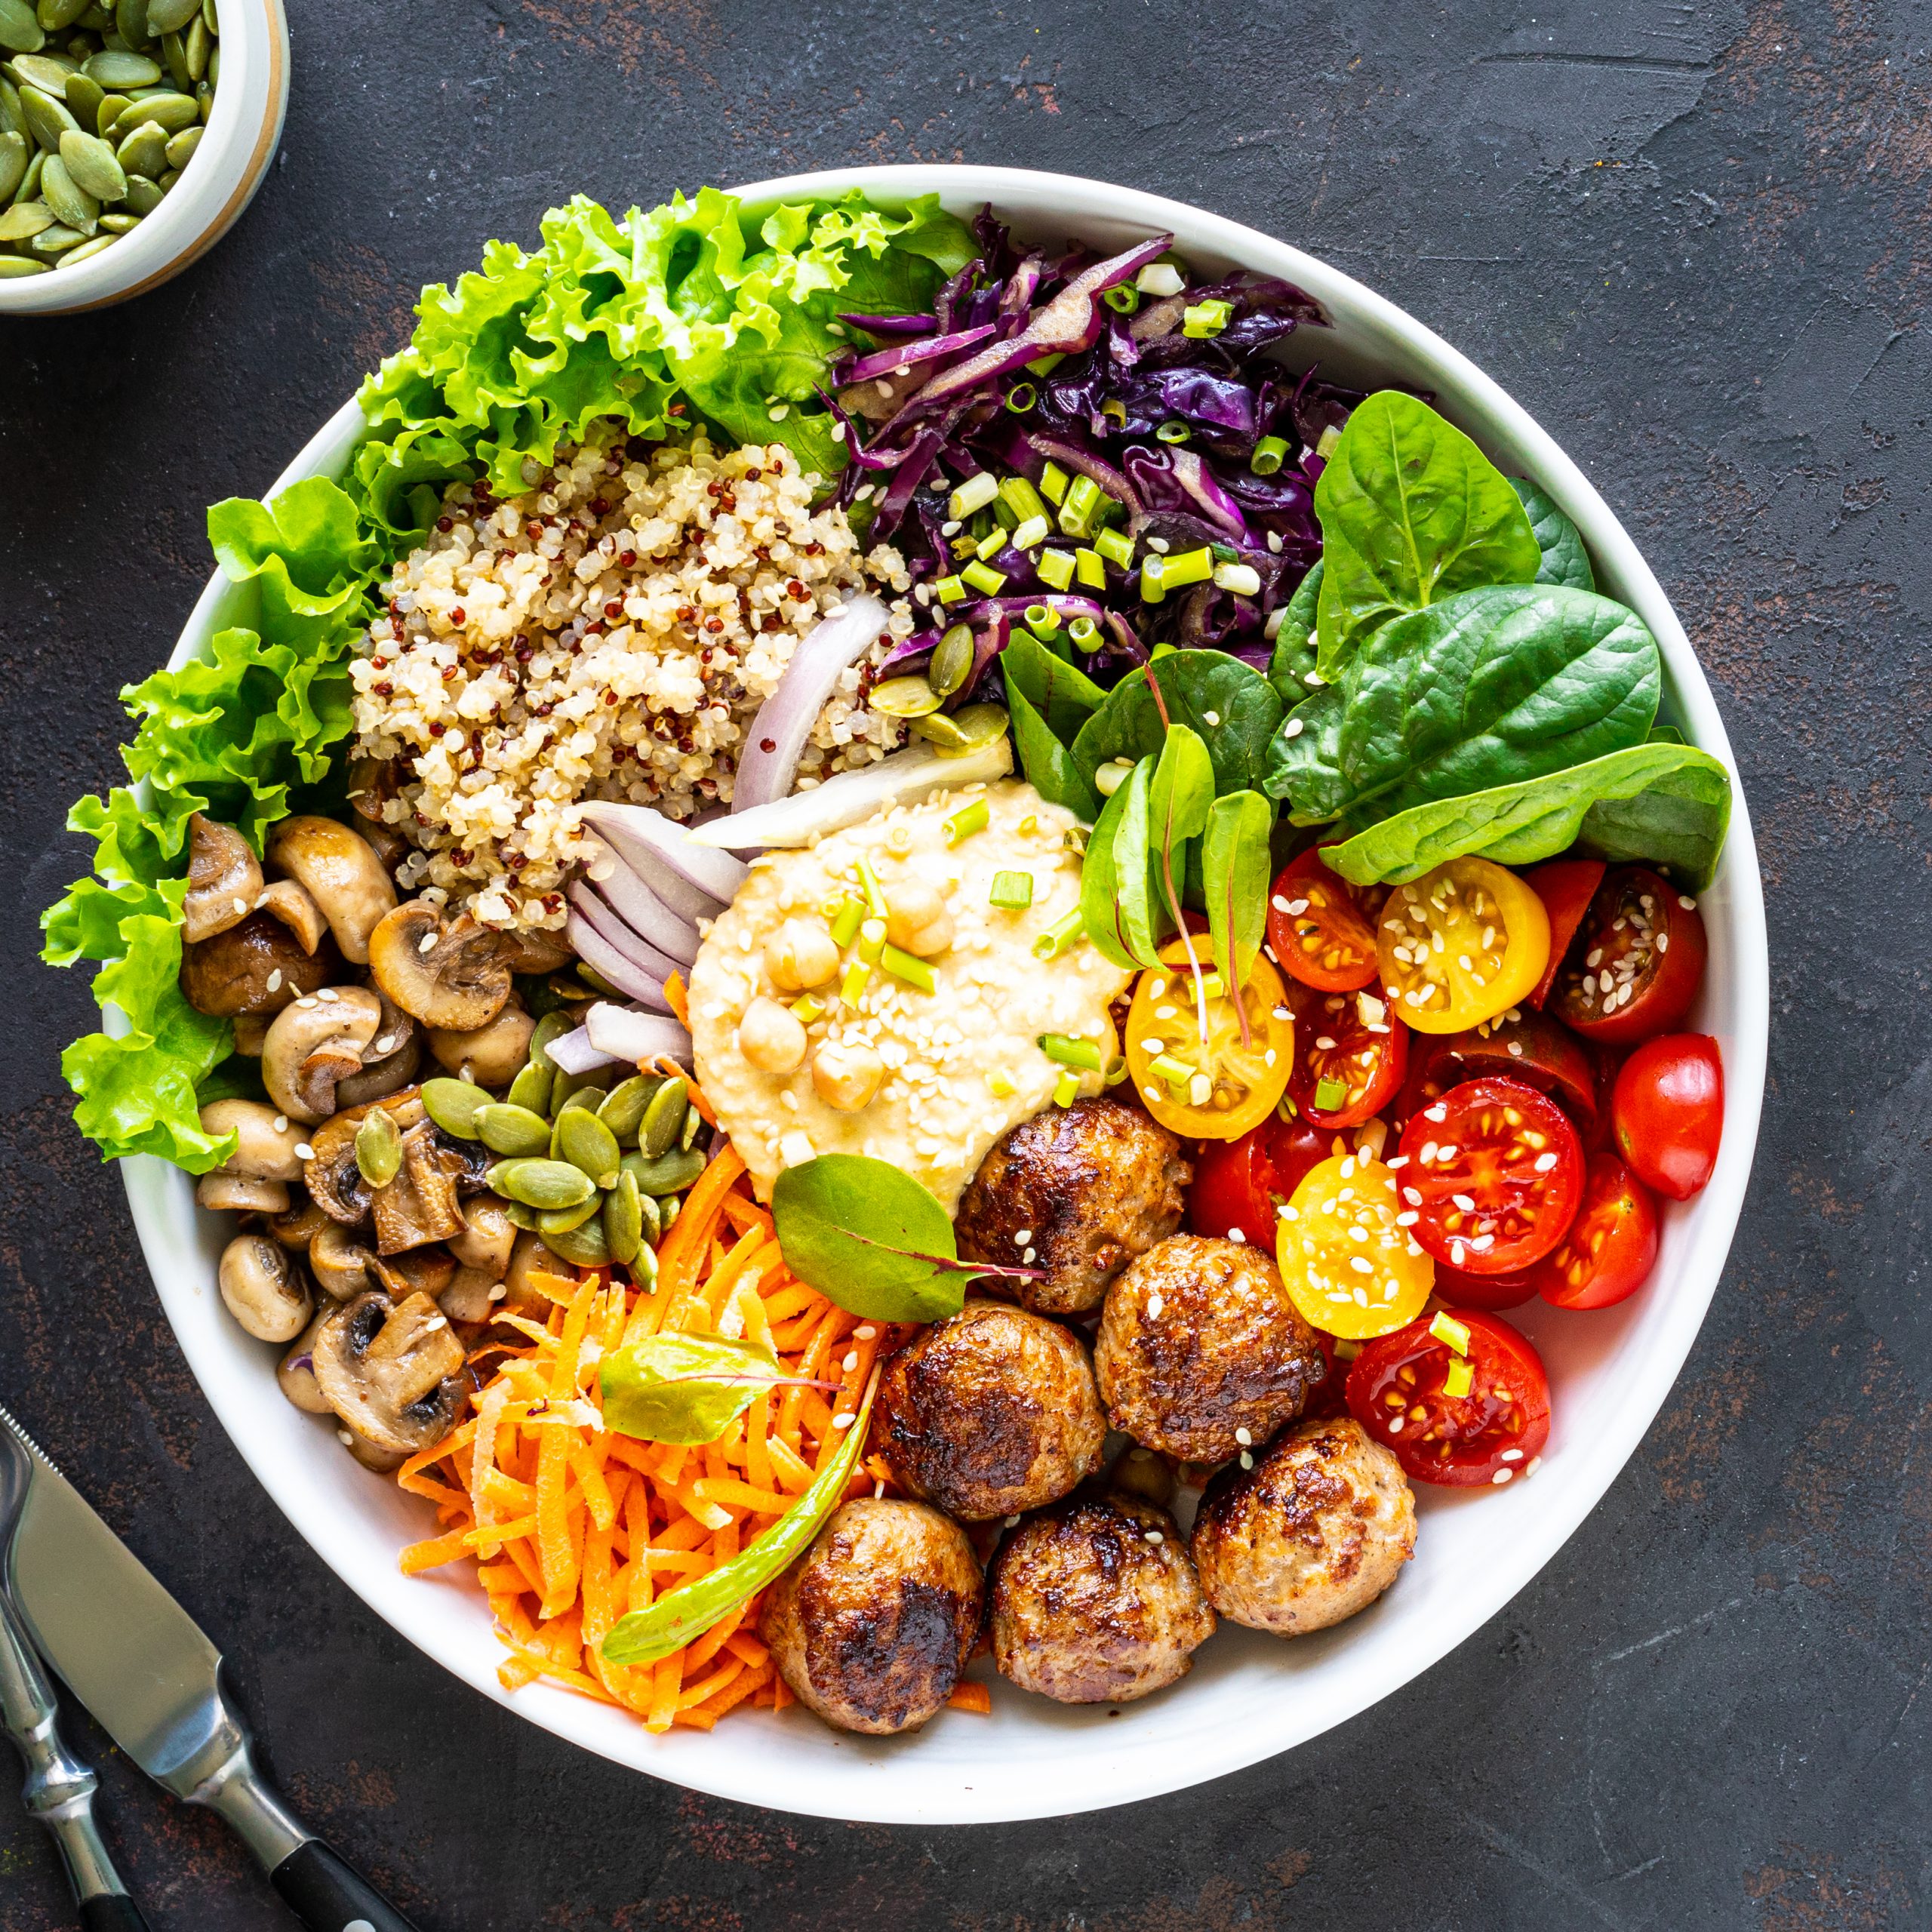 Fotografía de un bol de ensalada con varios alimentos, incluyendo carne.